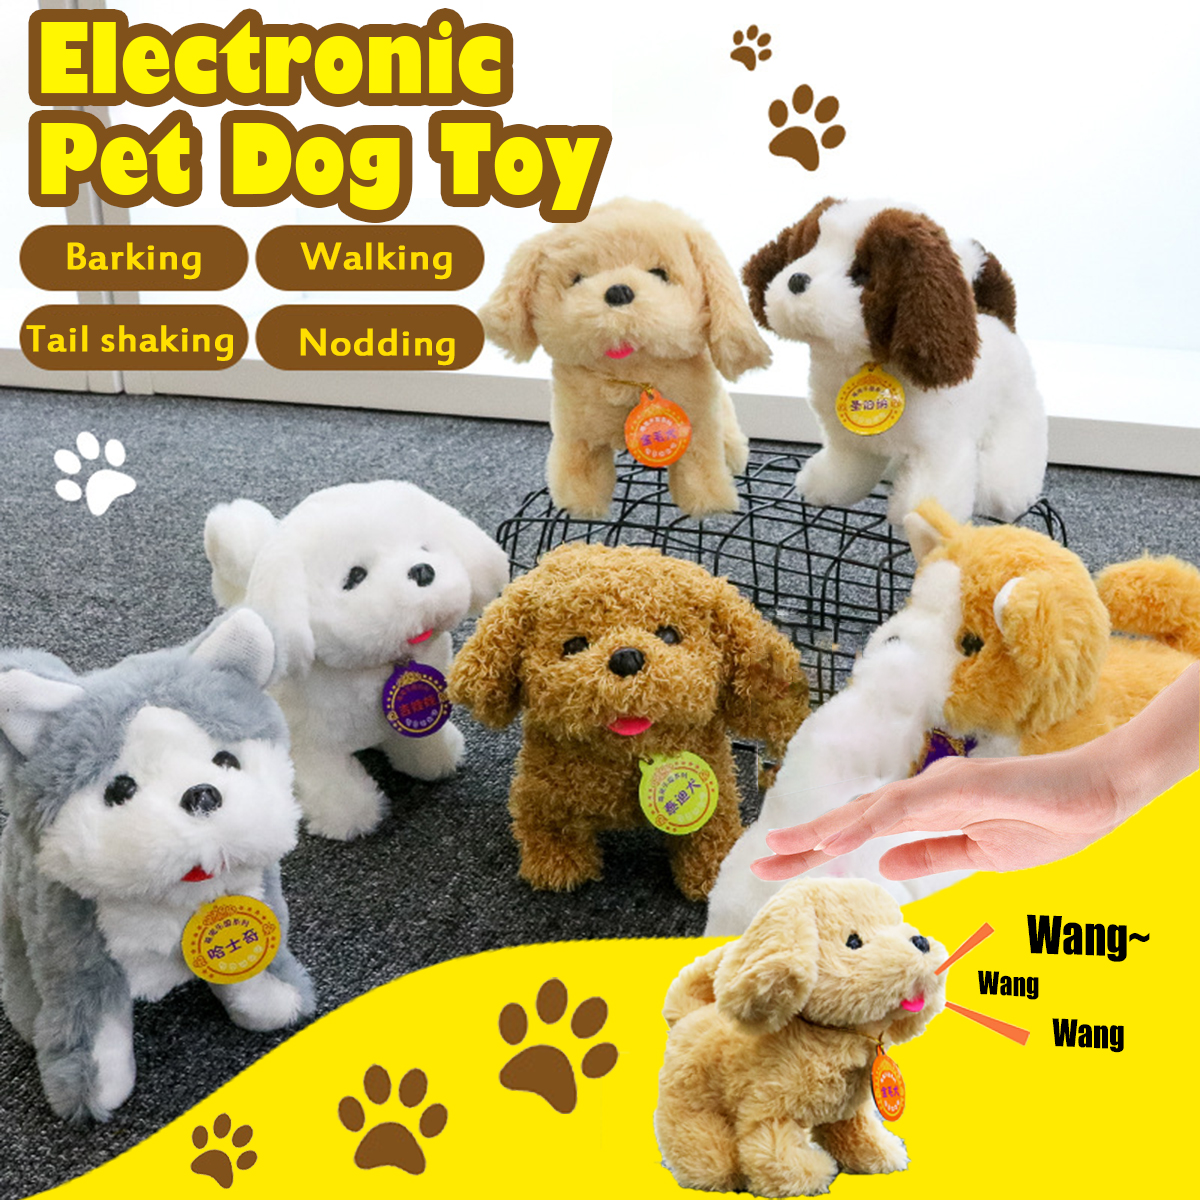 Electronic-Pet-Dog-Toy-Electric-Plush-Simulation-Doll-Dog-Doll-Plush-Toys-1724121-1